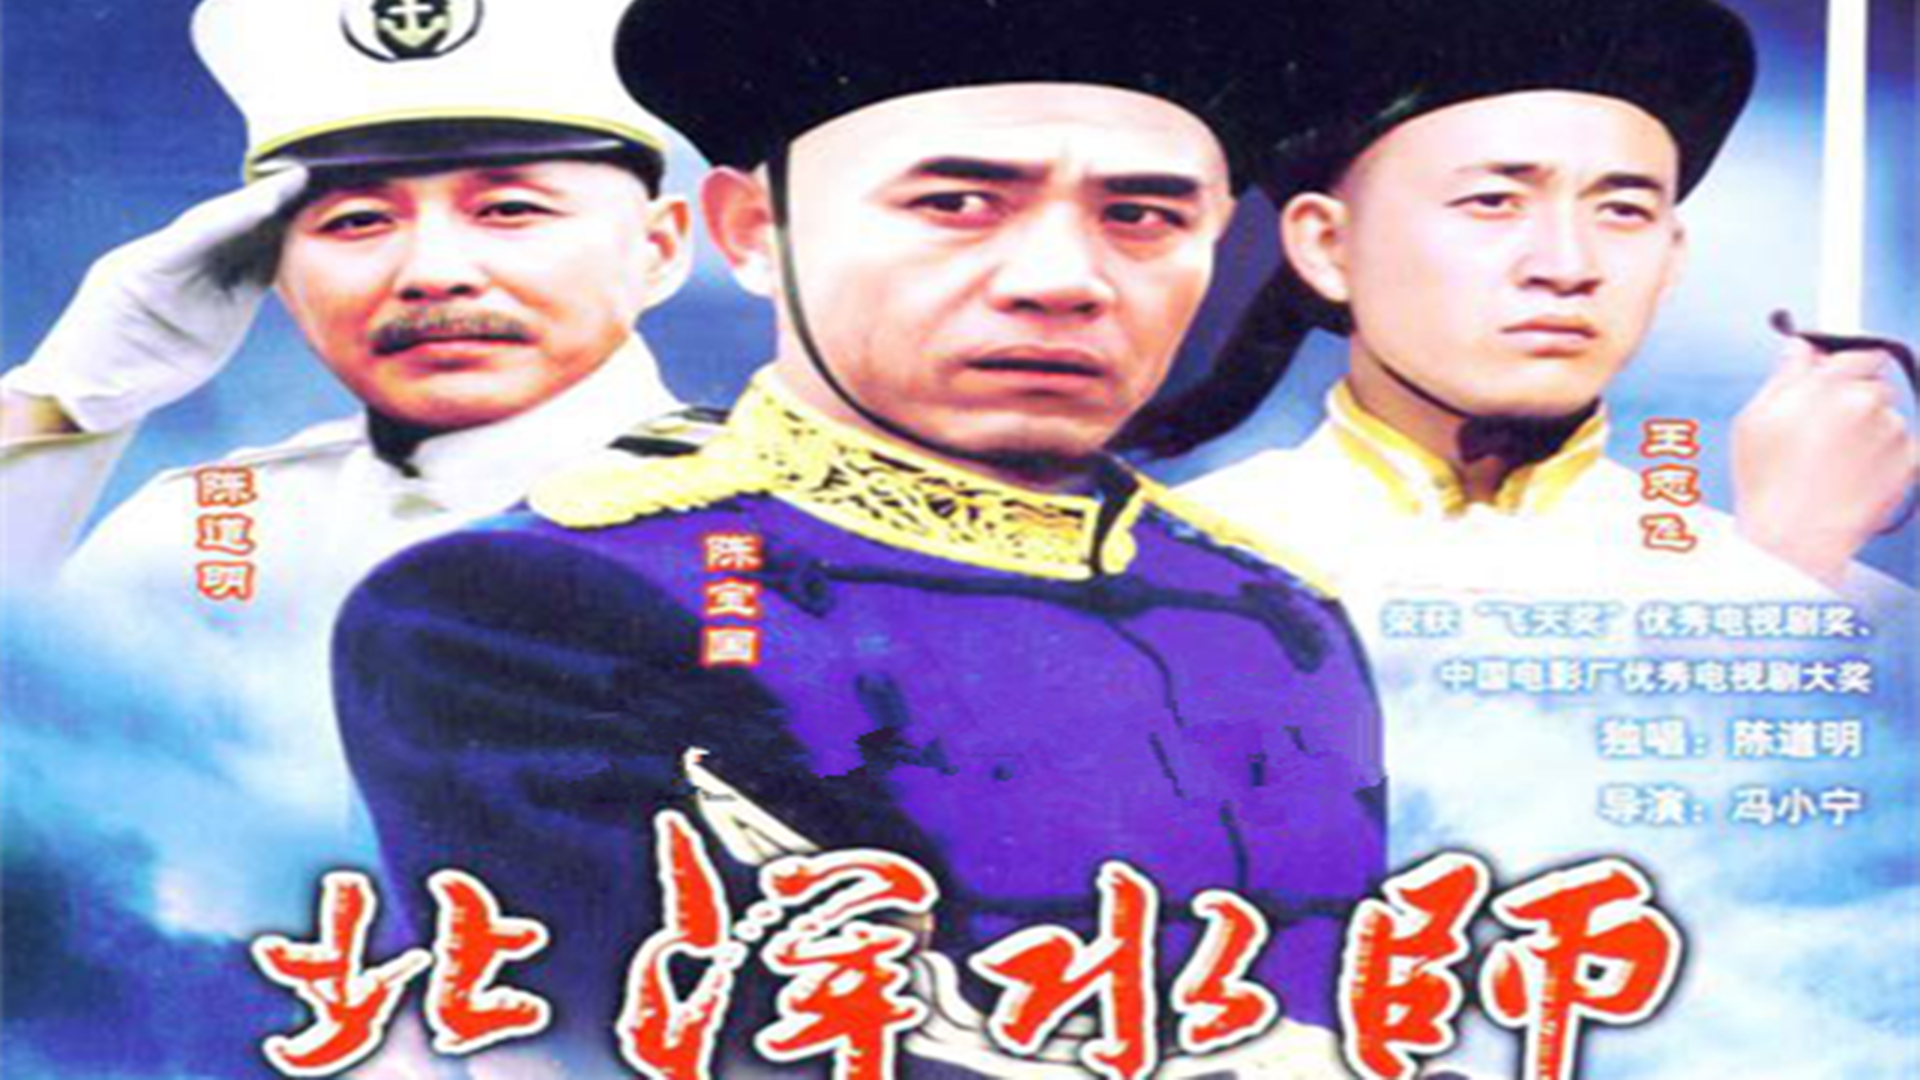 1992年,陈宝国和陈道明主演历史剧《北洋水师》,这部剧讲述了晚清时期